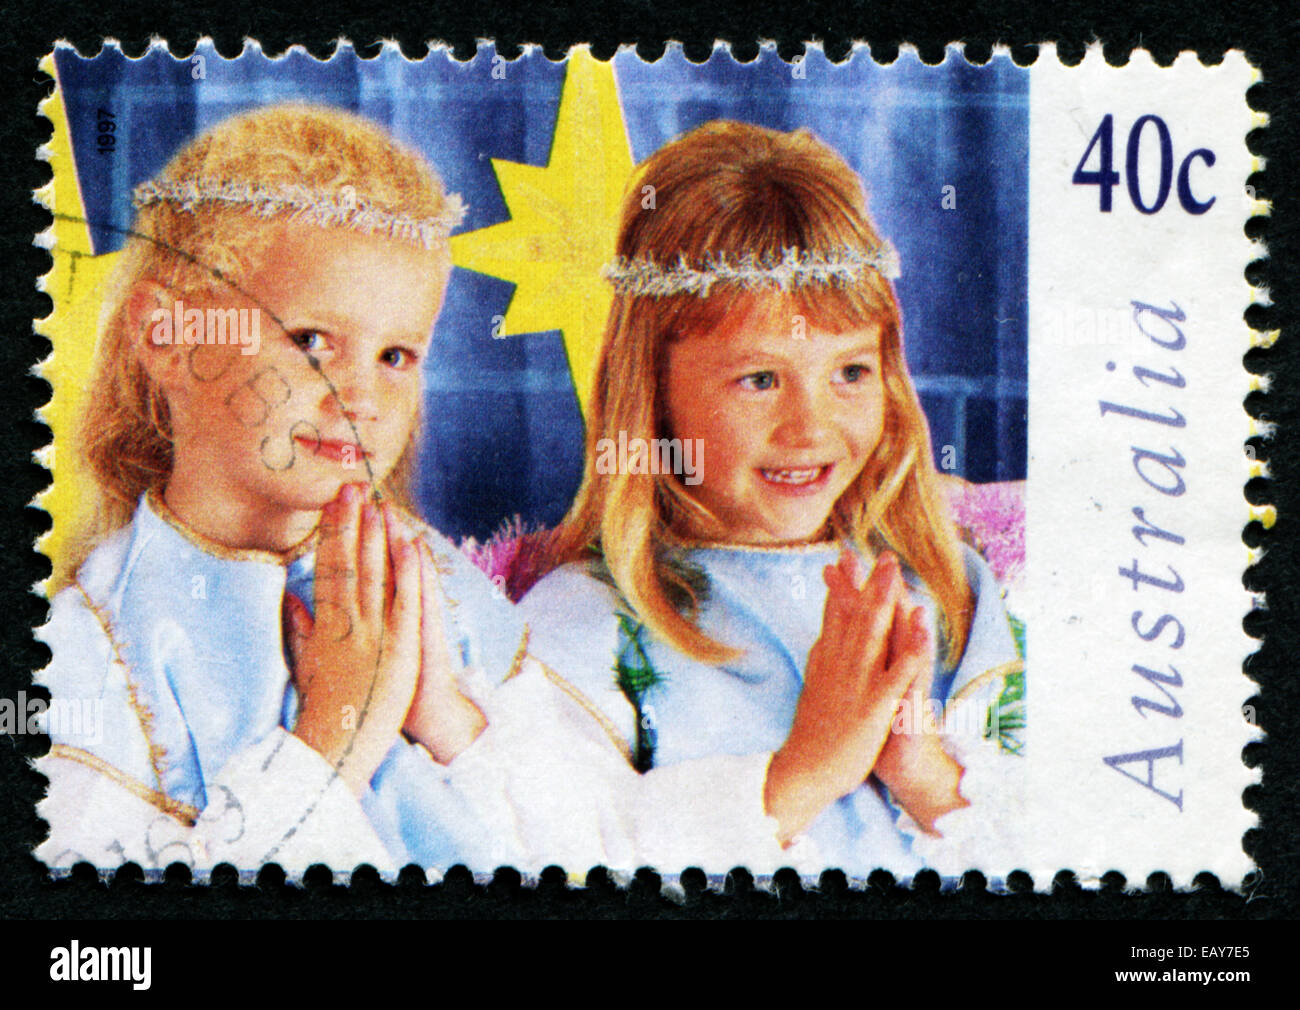 L'AUSTRALIE - circa 1997 : timbre-poste imprimé en Australie avec l'image de deux jeunes filles en costume de prier. Banque D'Images